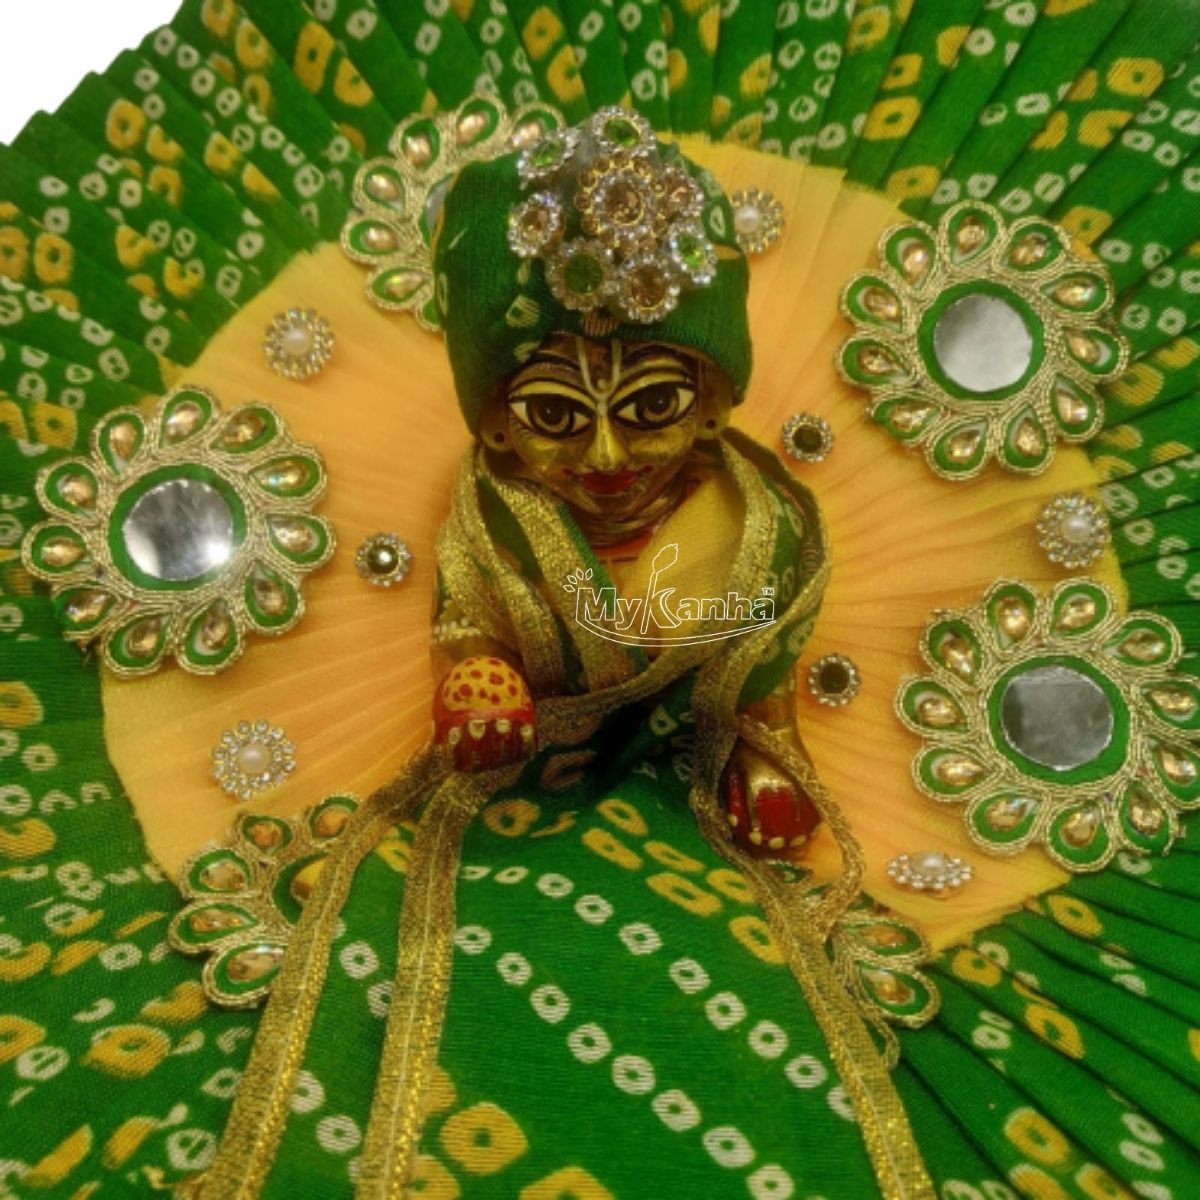 Bhandej Print Decorated Green  Dress For Laddu Gopal